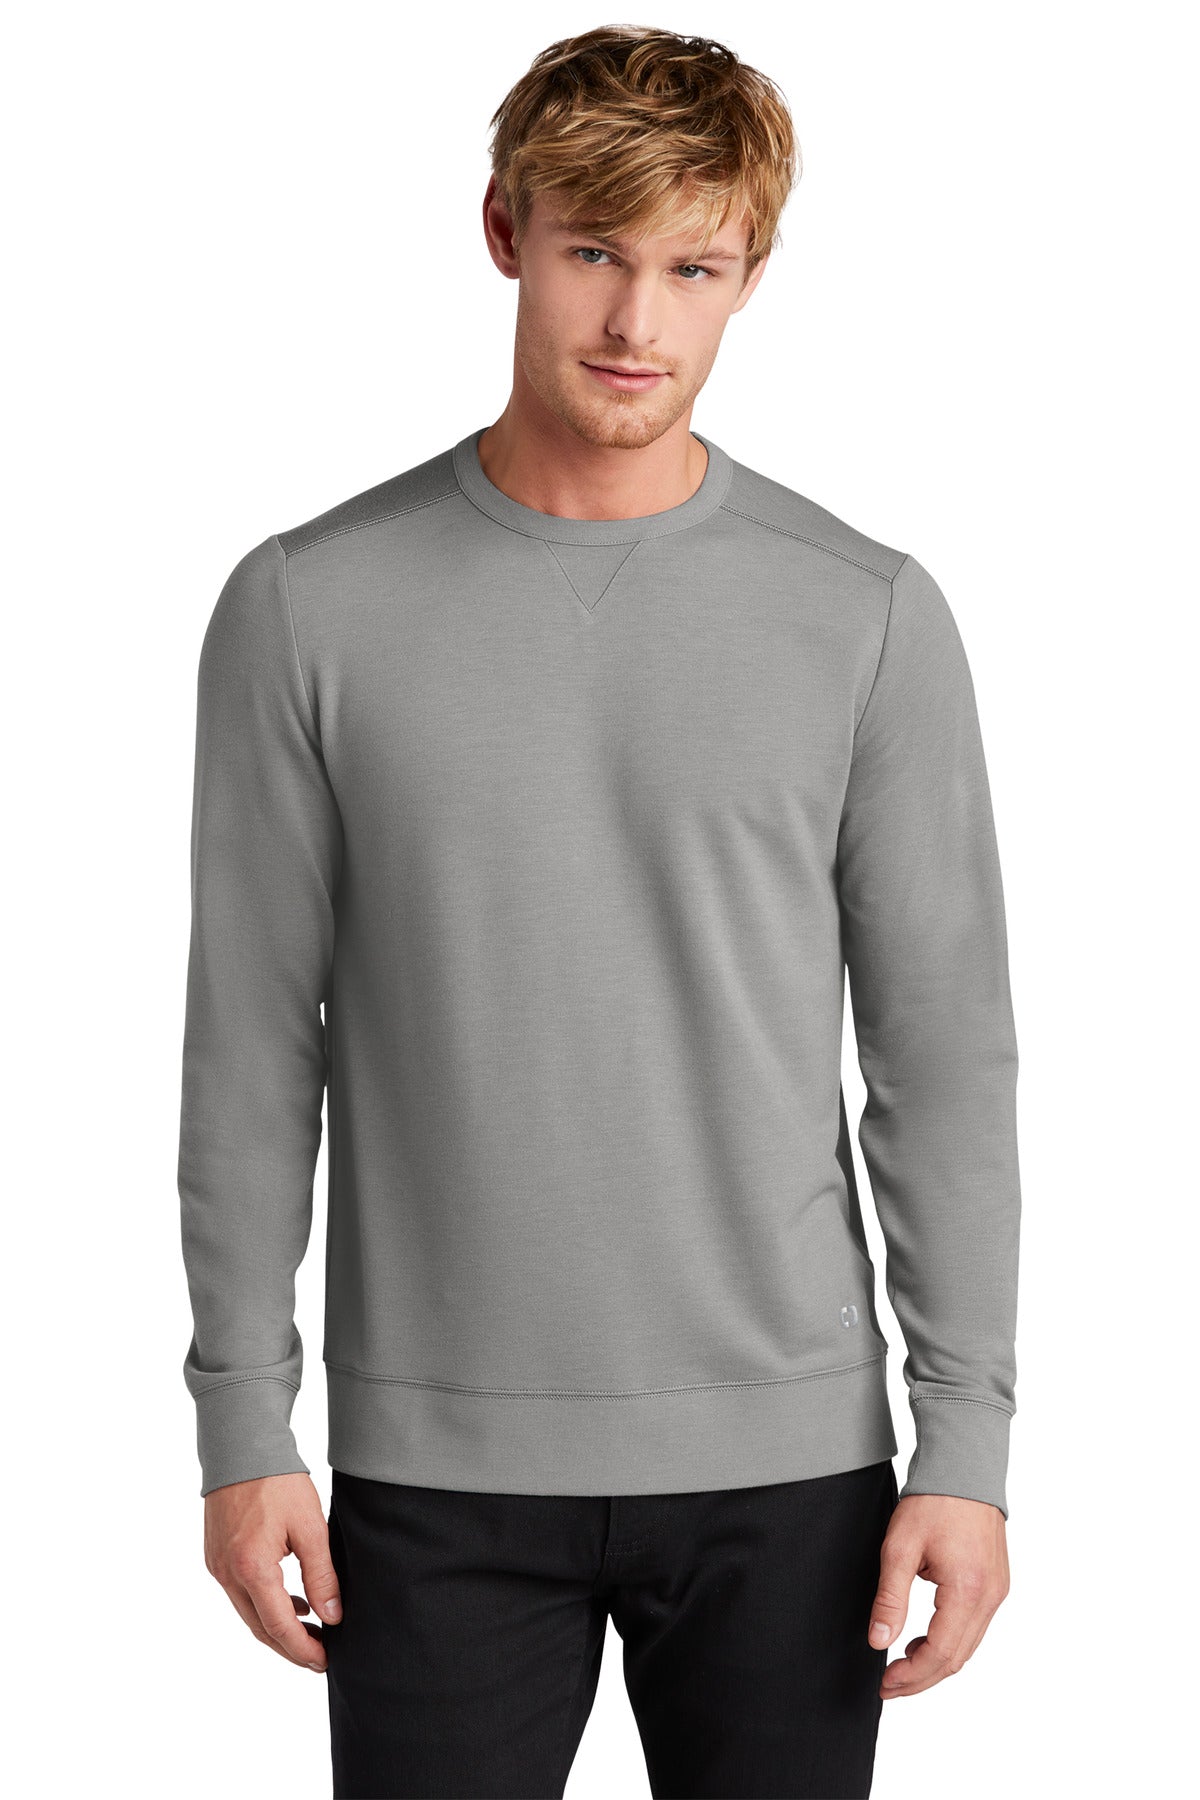 Sweatshirts/Fleece Petrol Grey Heather OGIO